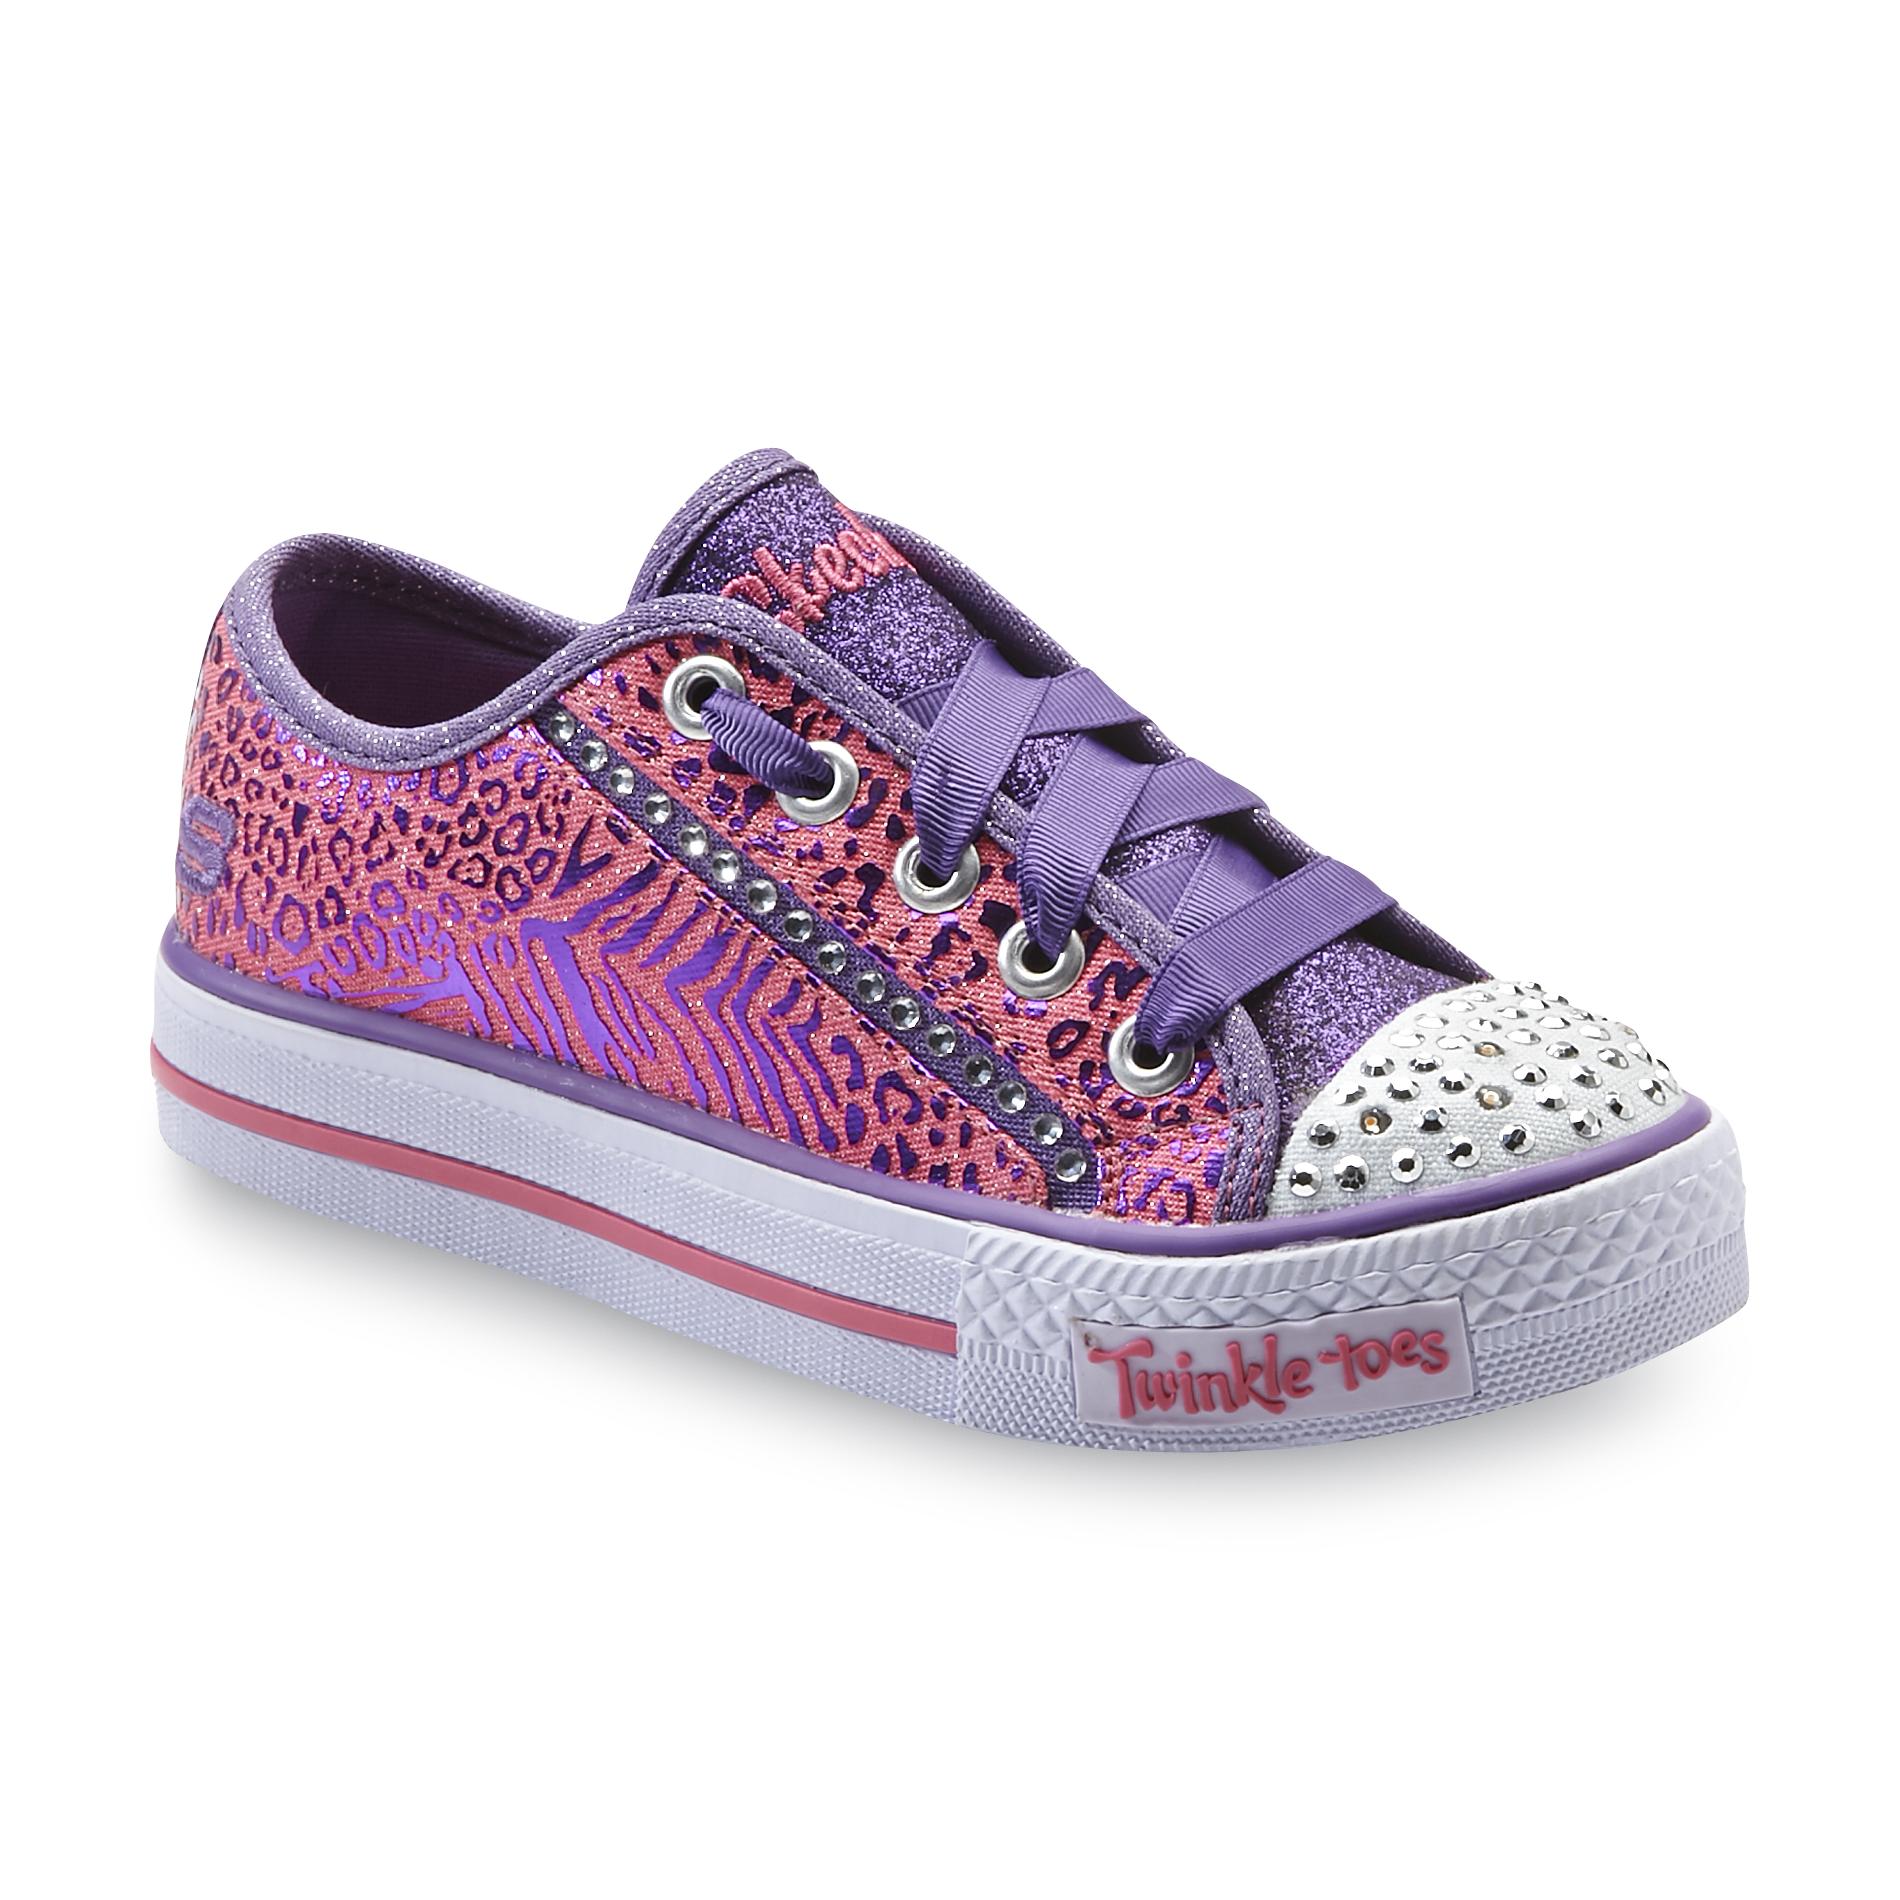 Skechers Girl's Twinkle Toes Gimmie Glam Animal Print/Pink/Purple Sneaker